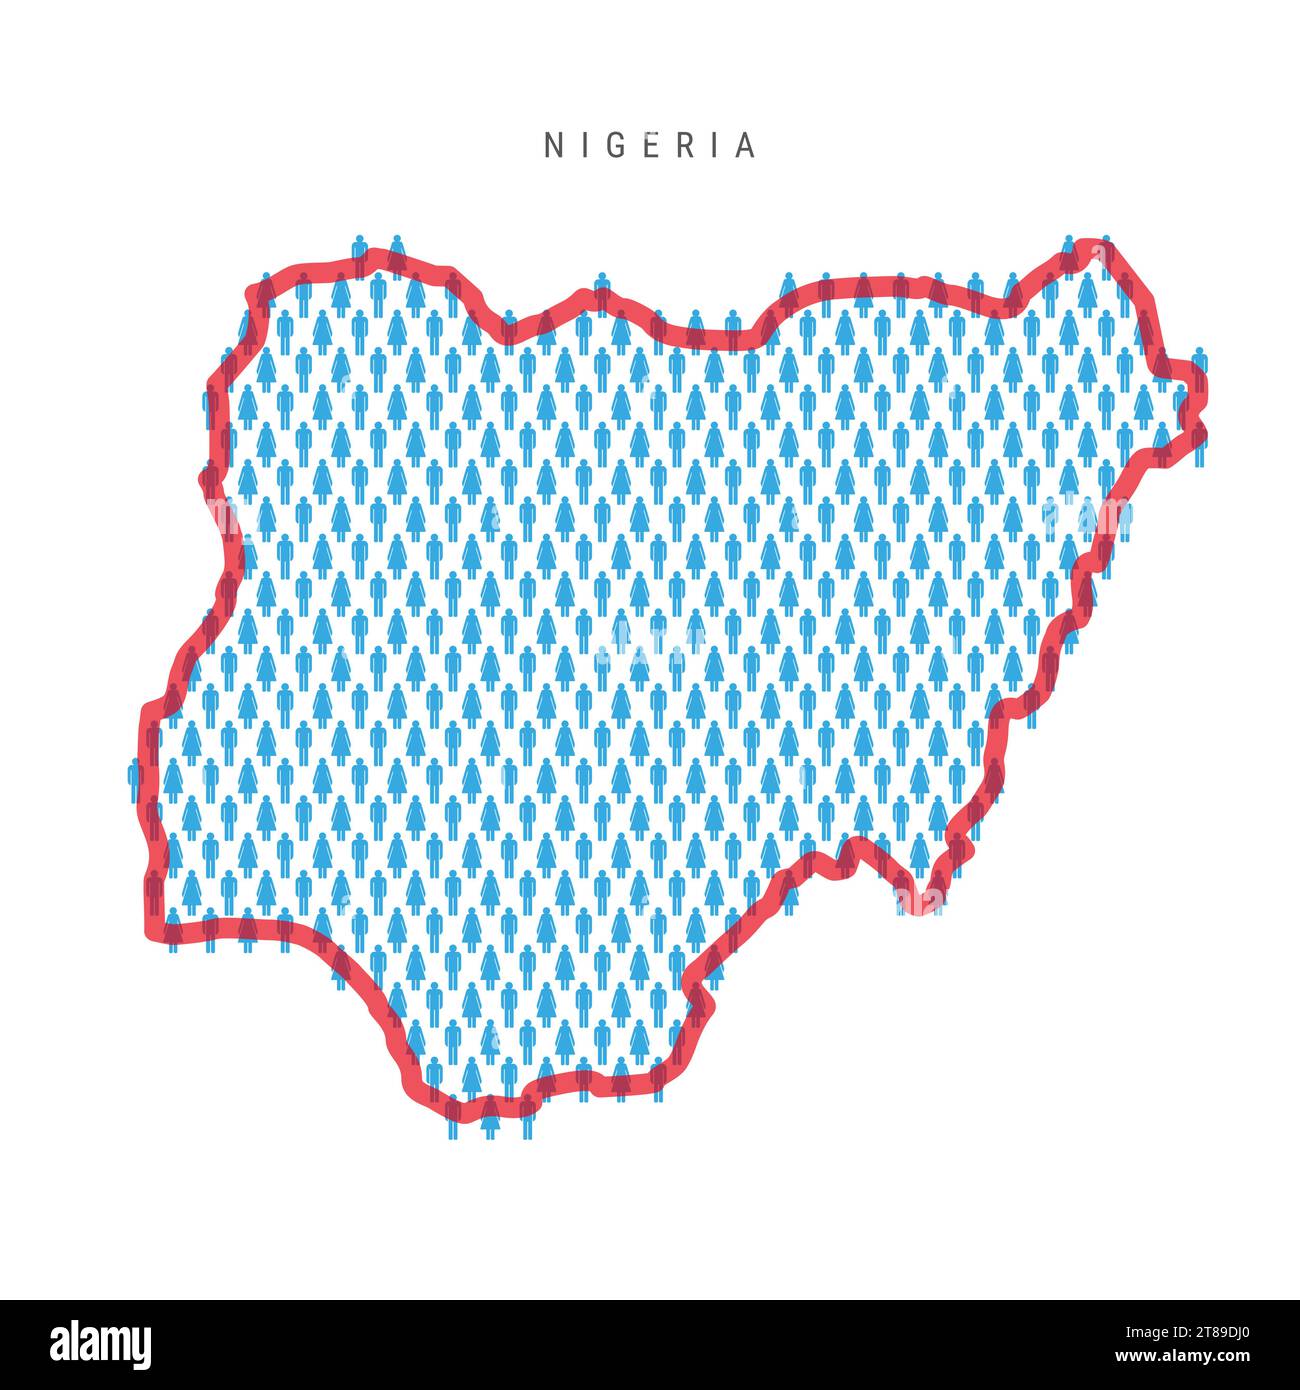 Mappa della popolazione nigeriana. I personaggi del popolo nigeriano si stagliano su una mappa con un confine rosso brillante e traslucido. Modello di icone di uomini e donne. Vettore isolato il Illustrazione Vettoriale